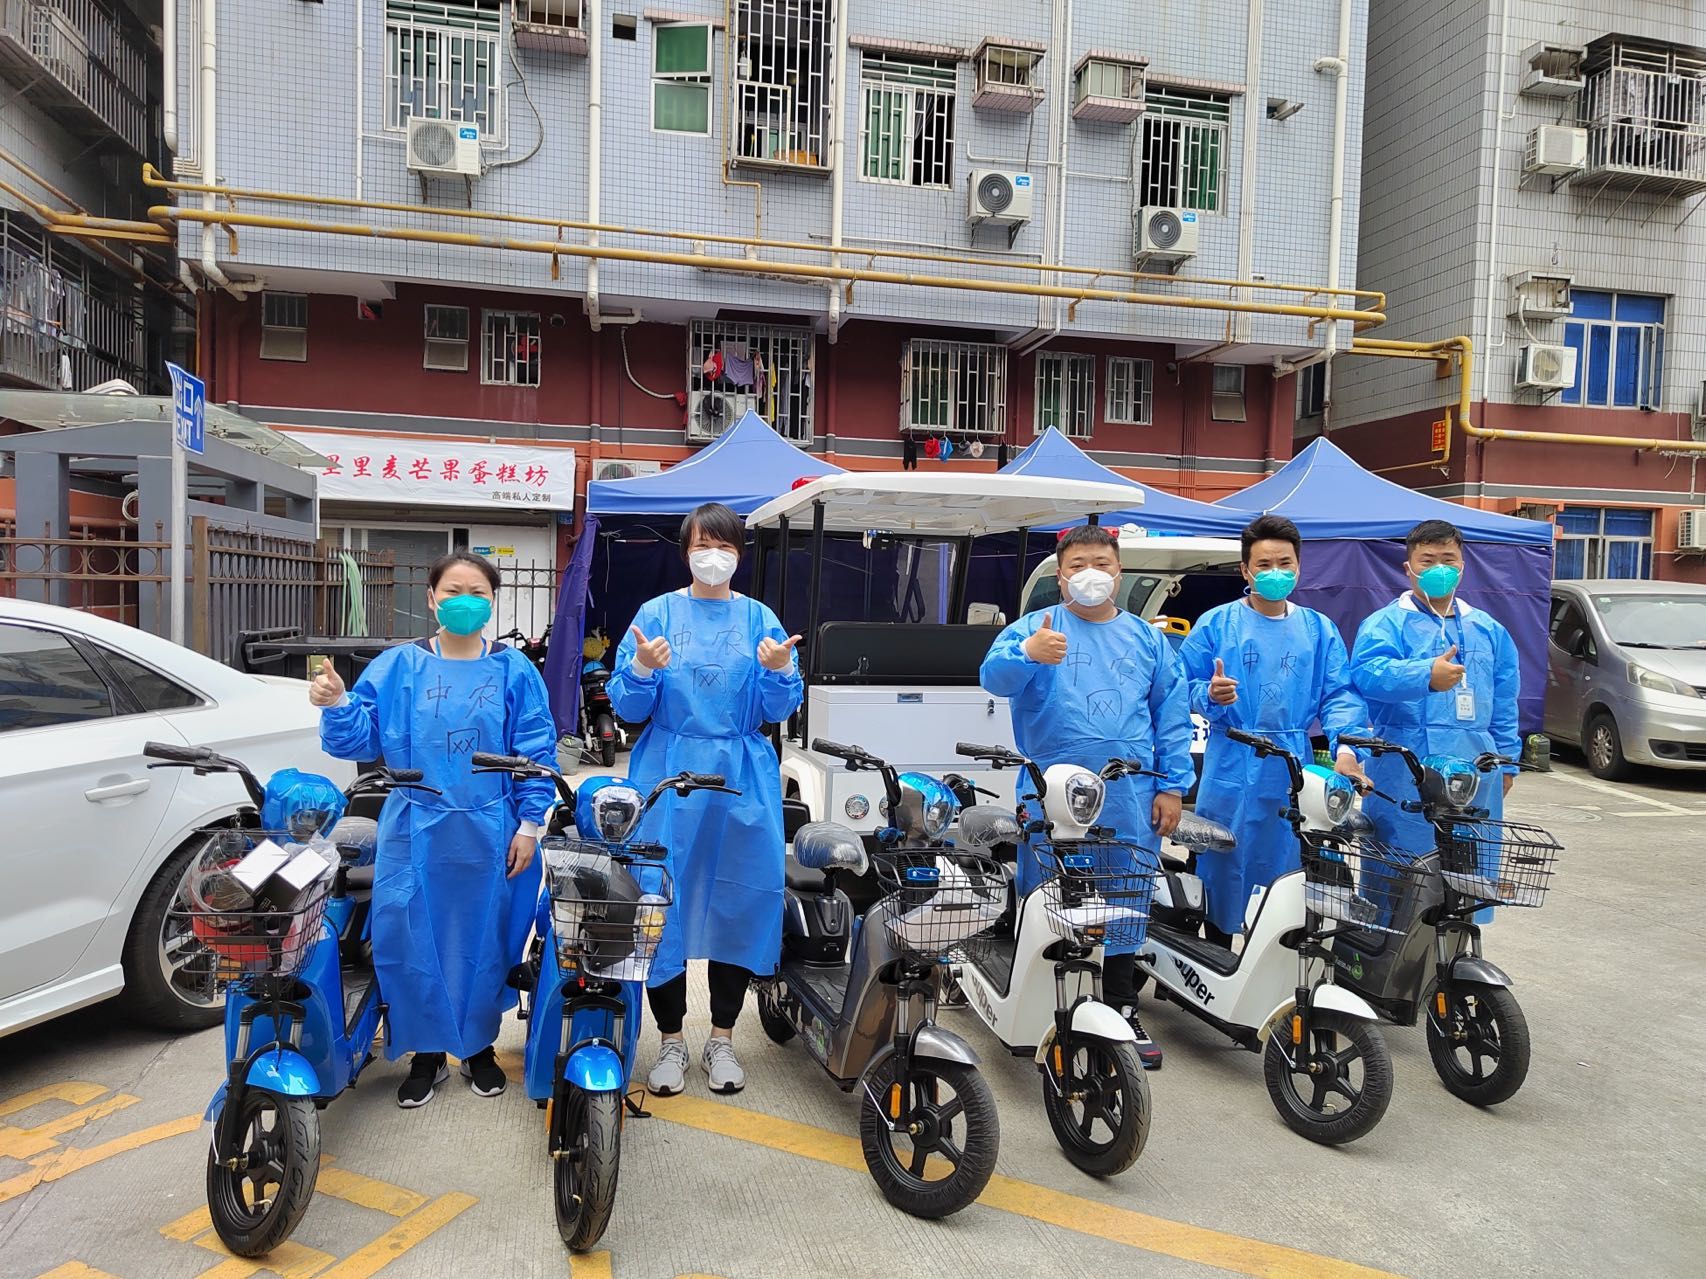 爱心企业捐赠30台电动车支援福田区沙头街道抗疫